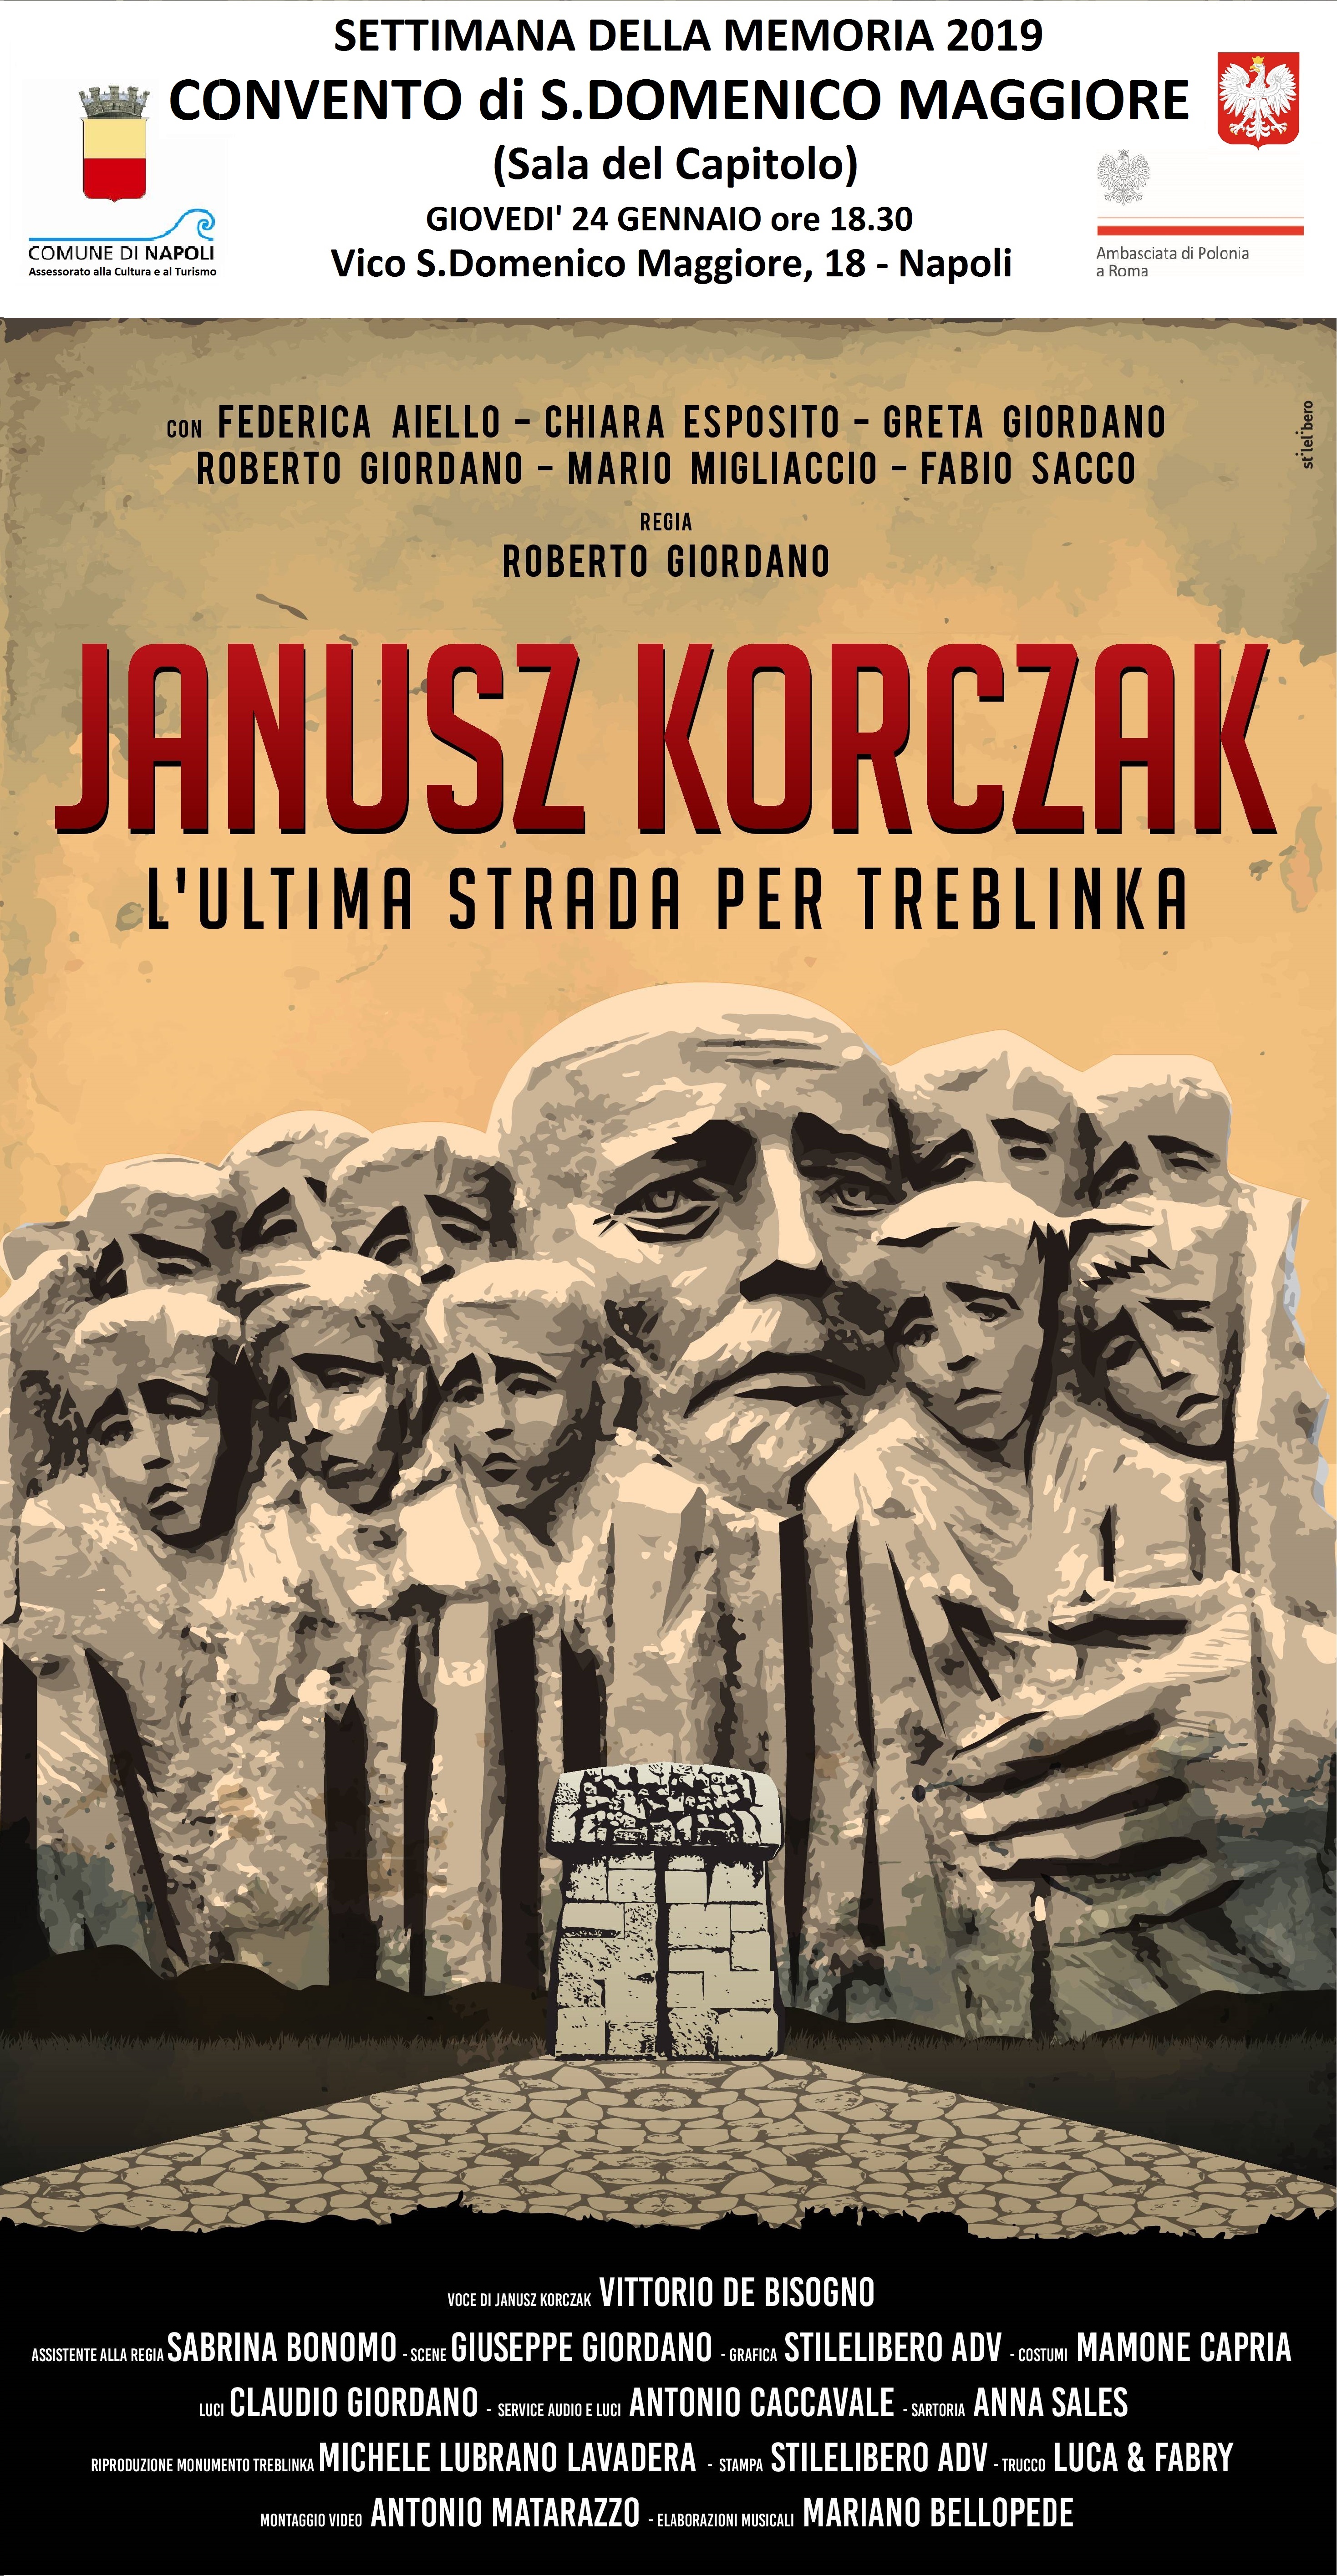 Alla sala del Capitolo del Convento di San Domenico Maggiore grande attesa per lo spettacolo Janusz Korczak – L’ultima Strada per Treblinka